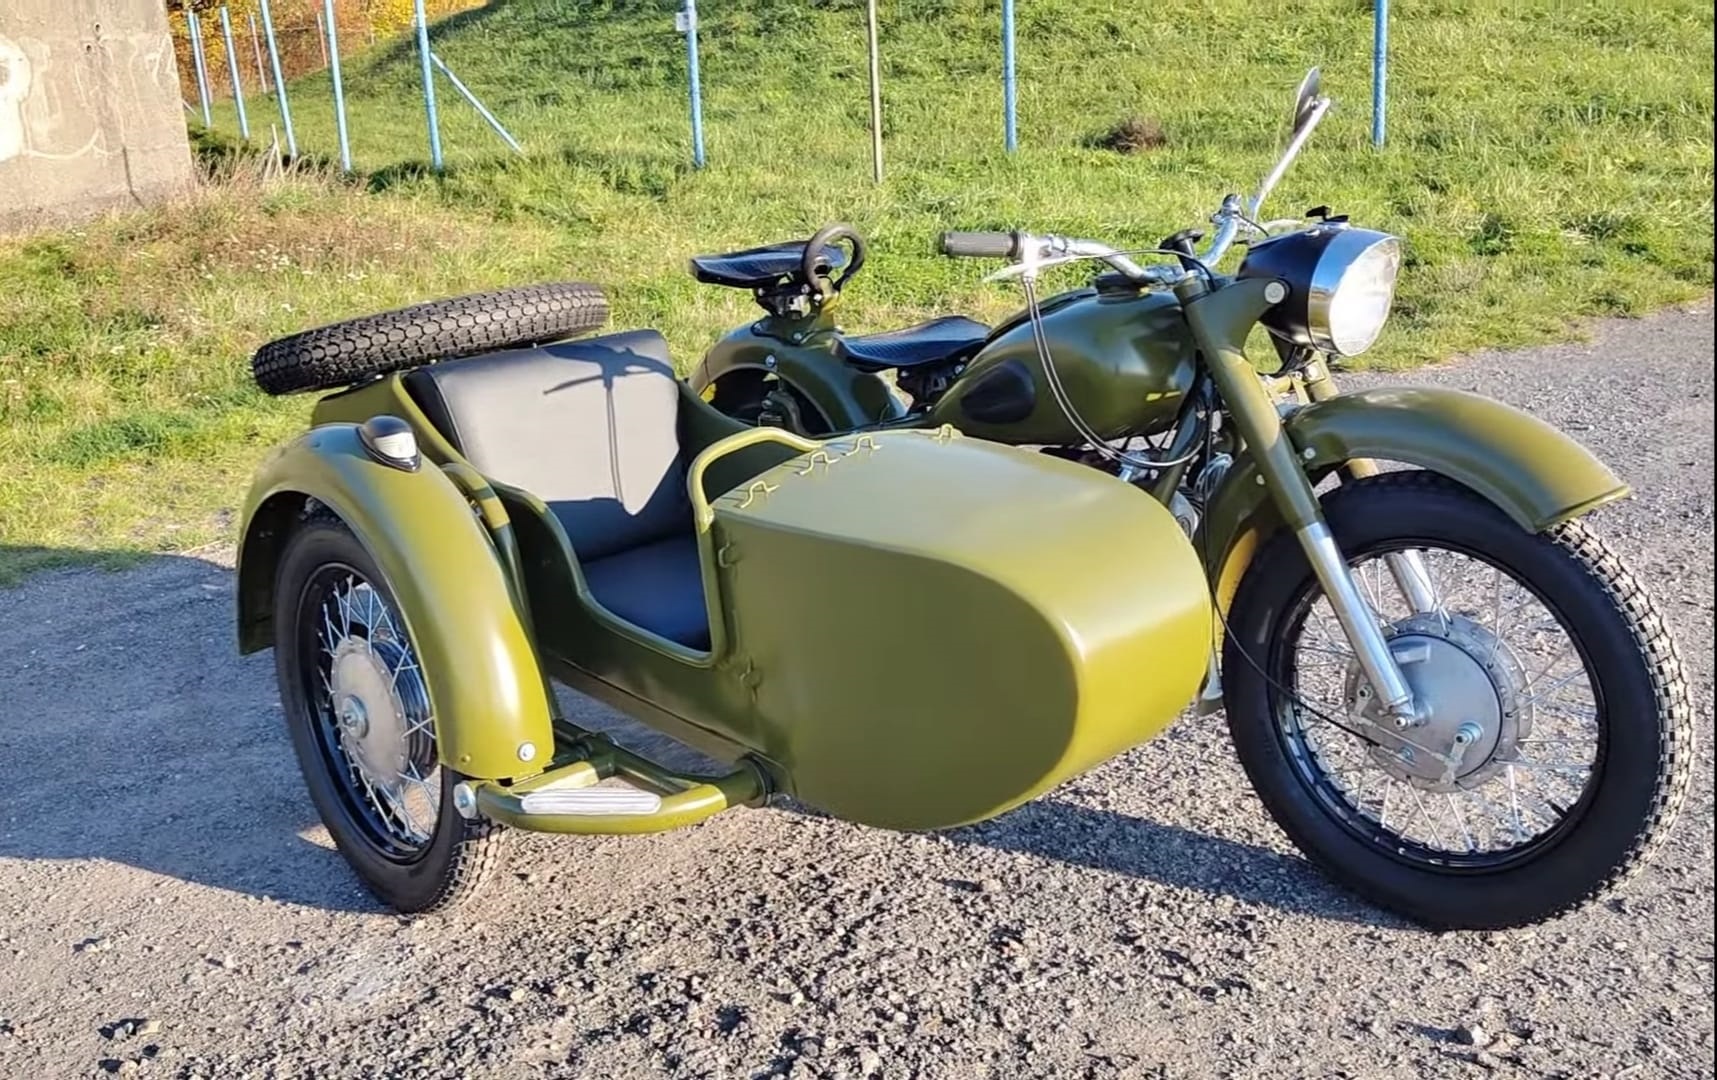 Dnieper motorcycle